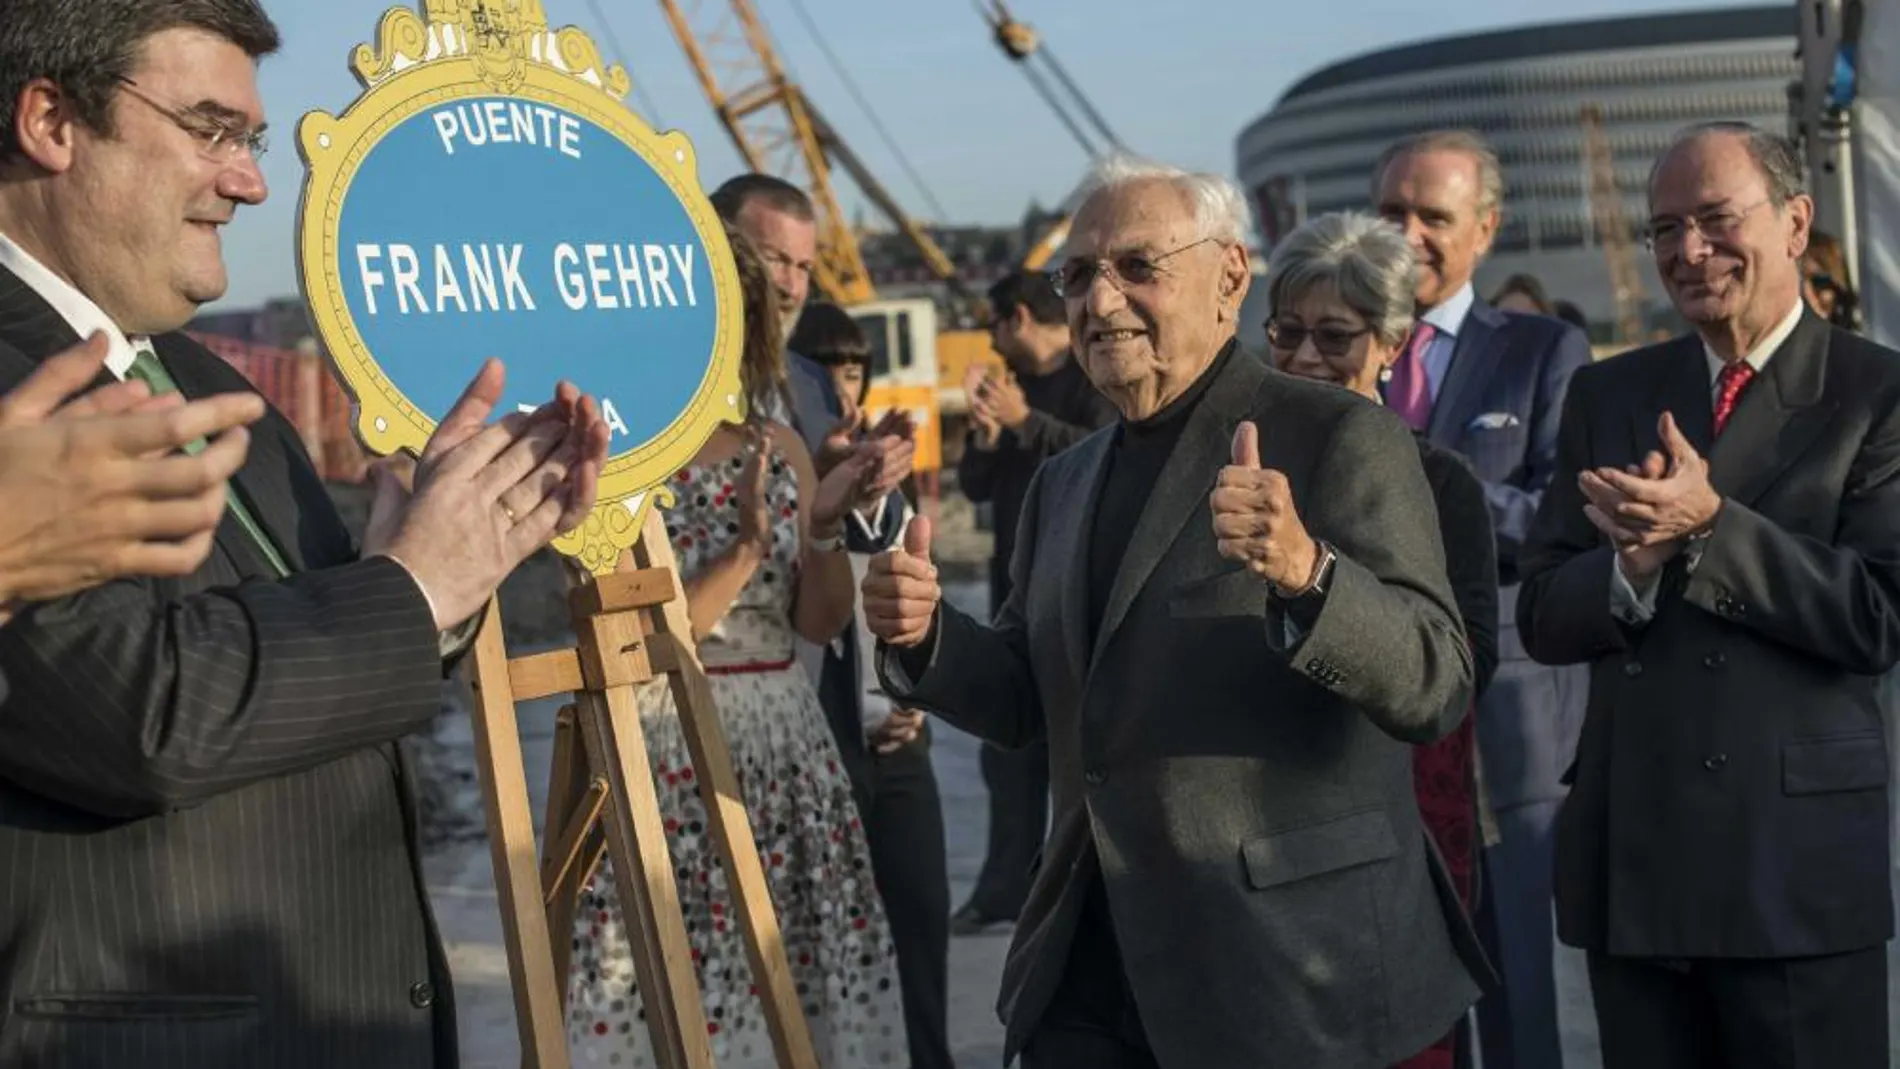 El arquitecto Frank Gehry, autor del museo Guggenheim de Bilbao, tras poner la primera piedra simbólica de un nuevo puente sobre la ría de Bilbao